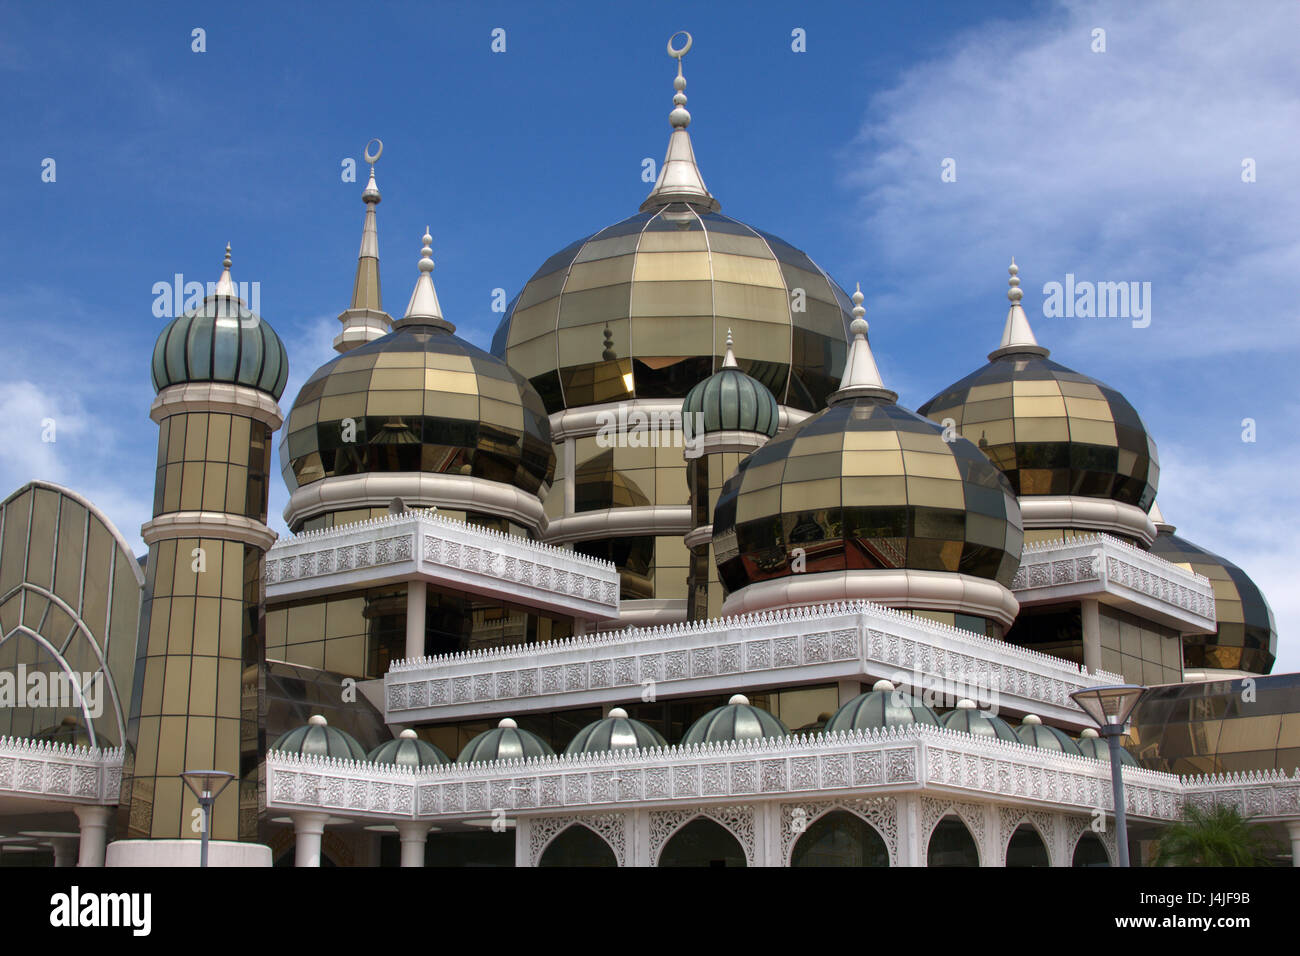 The Crystal Mosque at Kuala Terengganu, Terengganu state, Malaysia Stock Photo